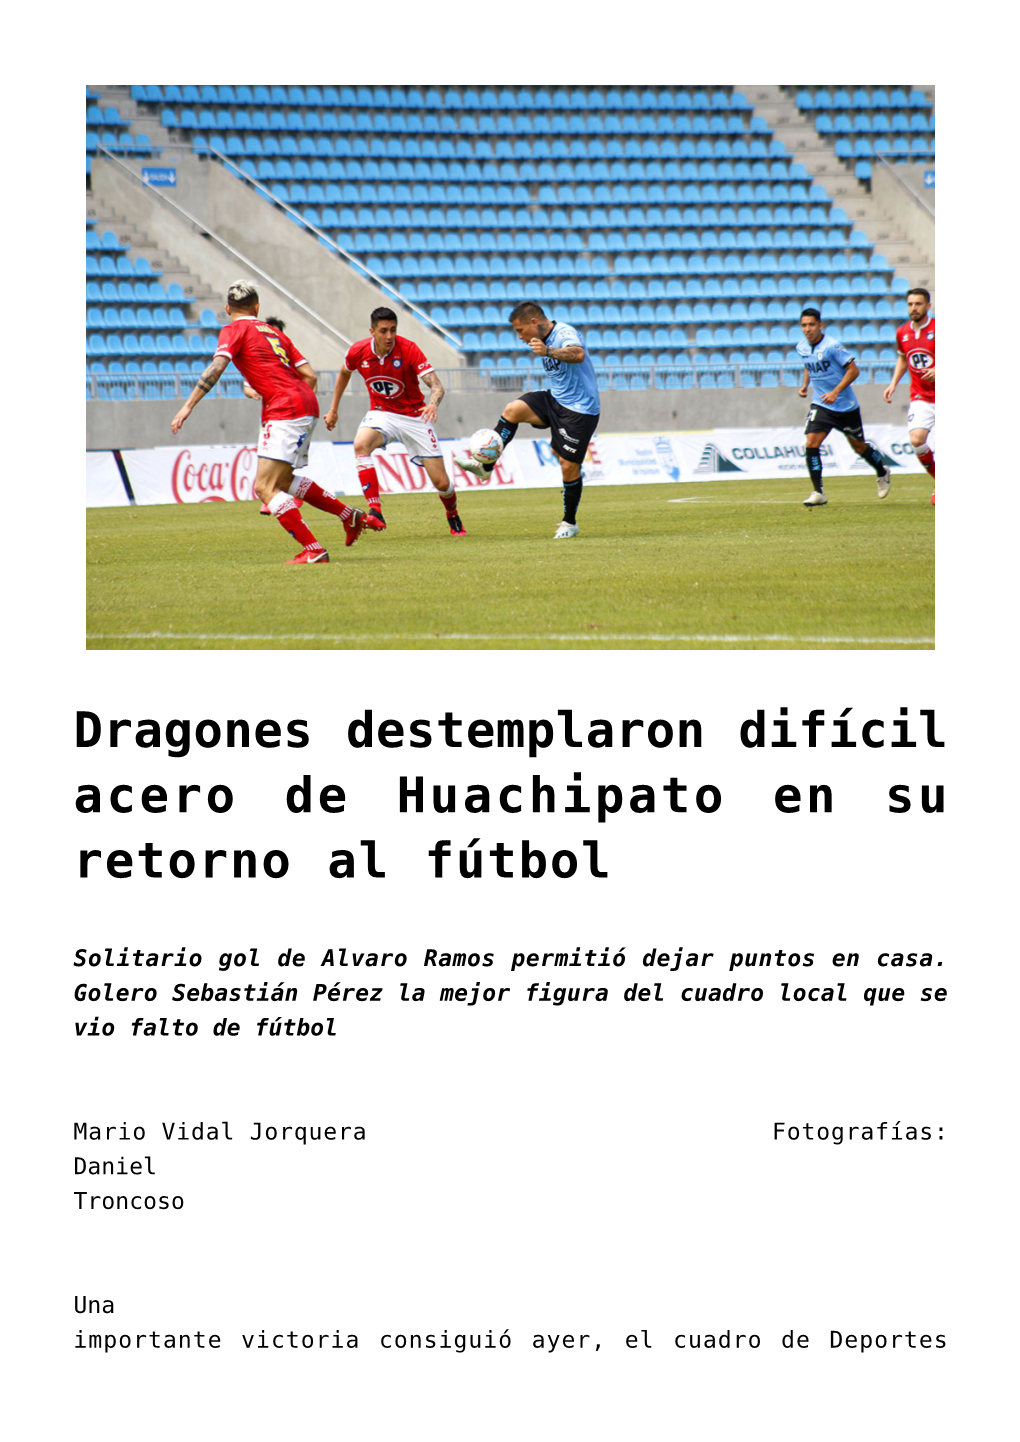 Dragones Destemplaron Difícil Acero De Huachipato En Su Retorno Al Fútbol